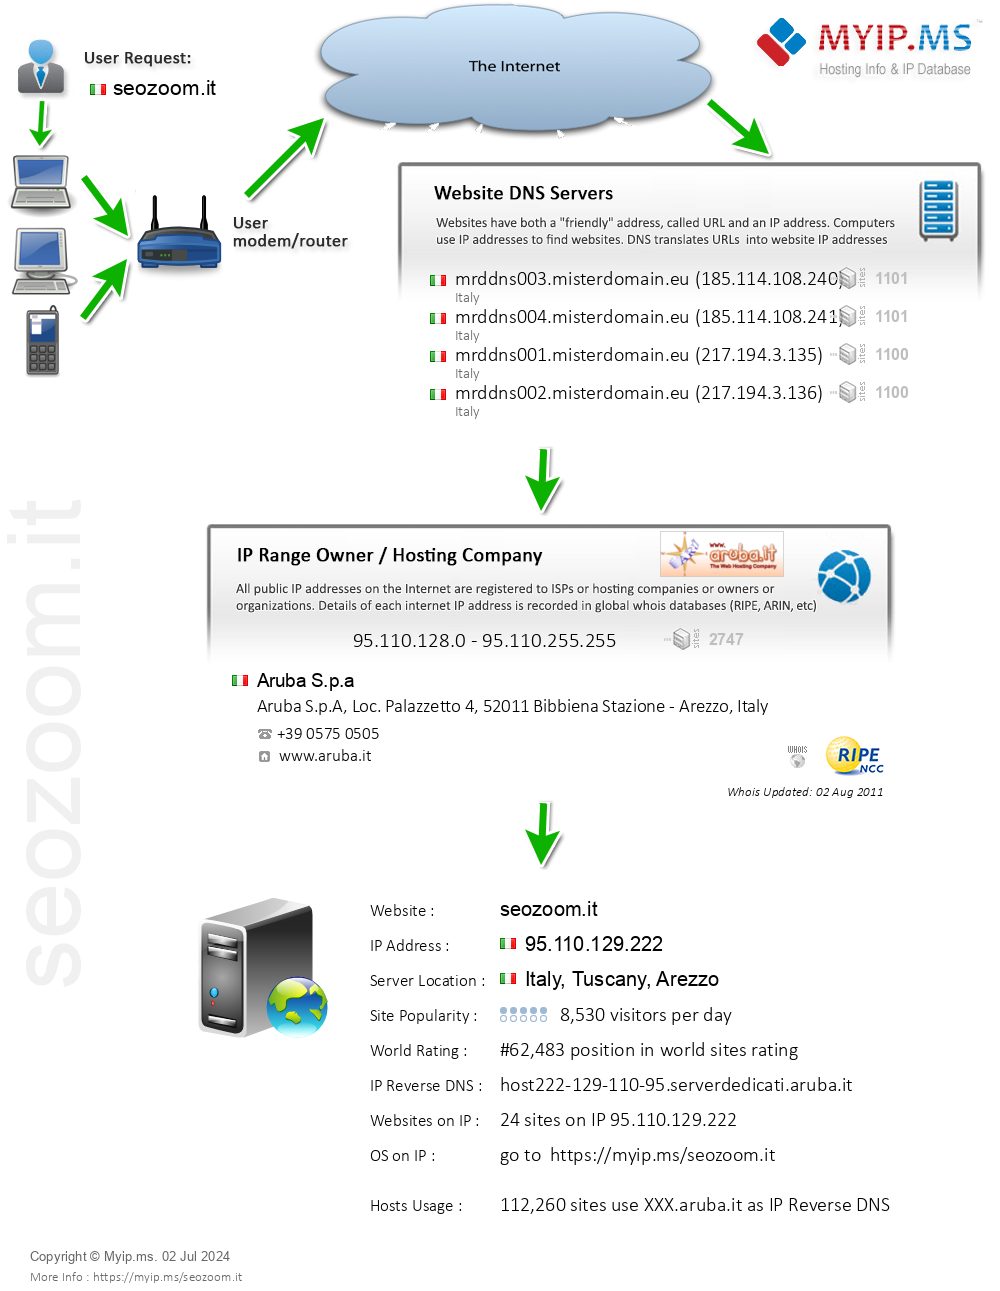 Seozoom.it - Website Hosting Visual IP Diagram